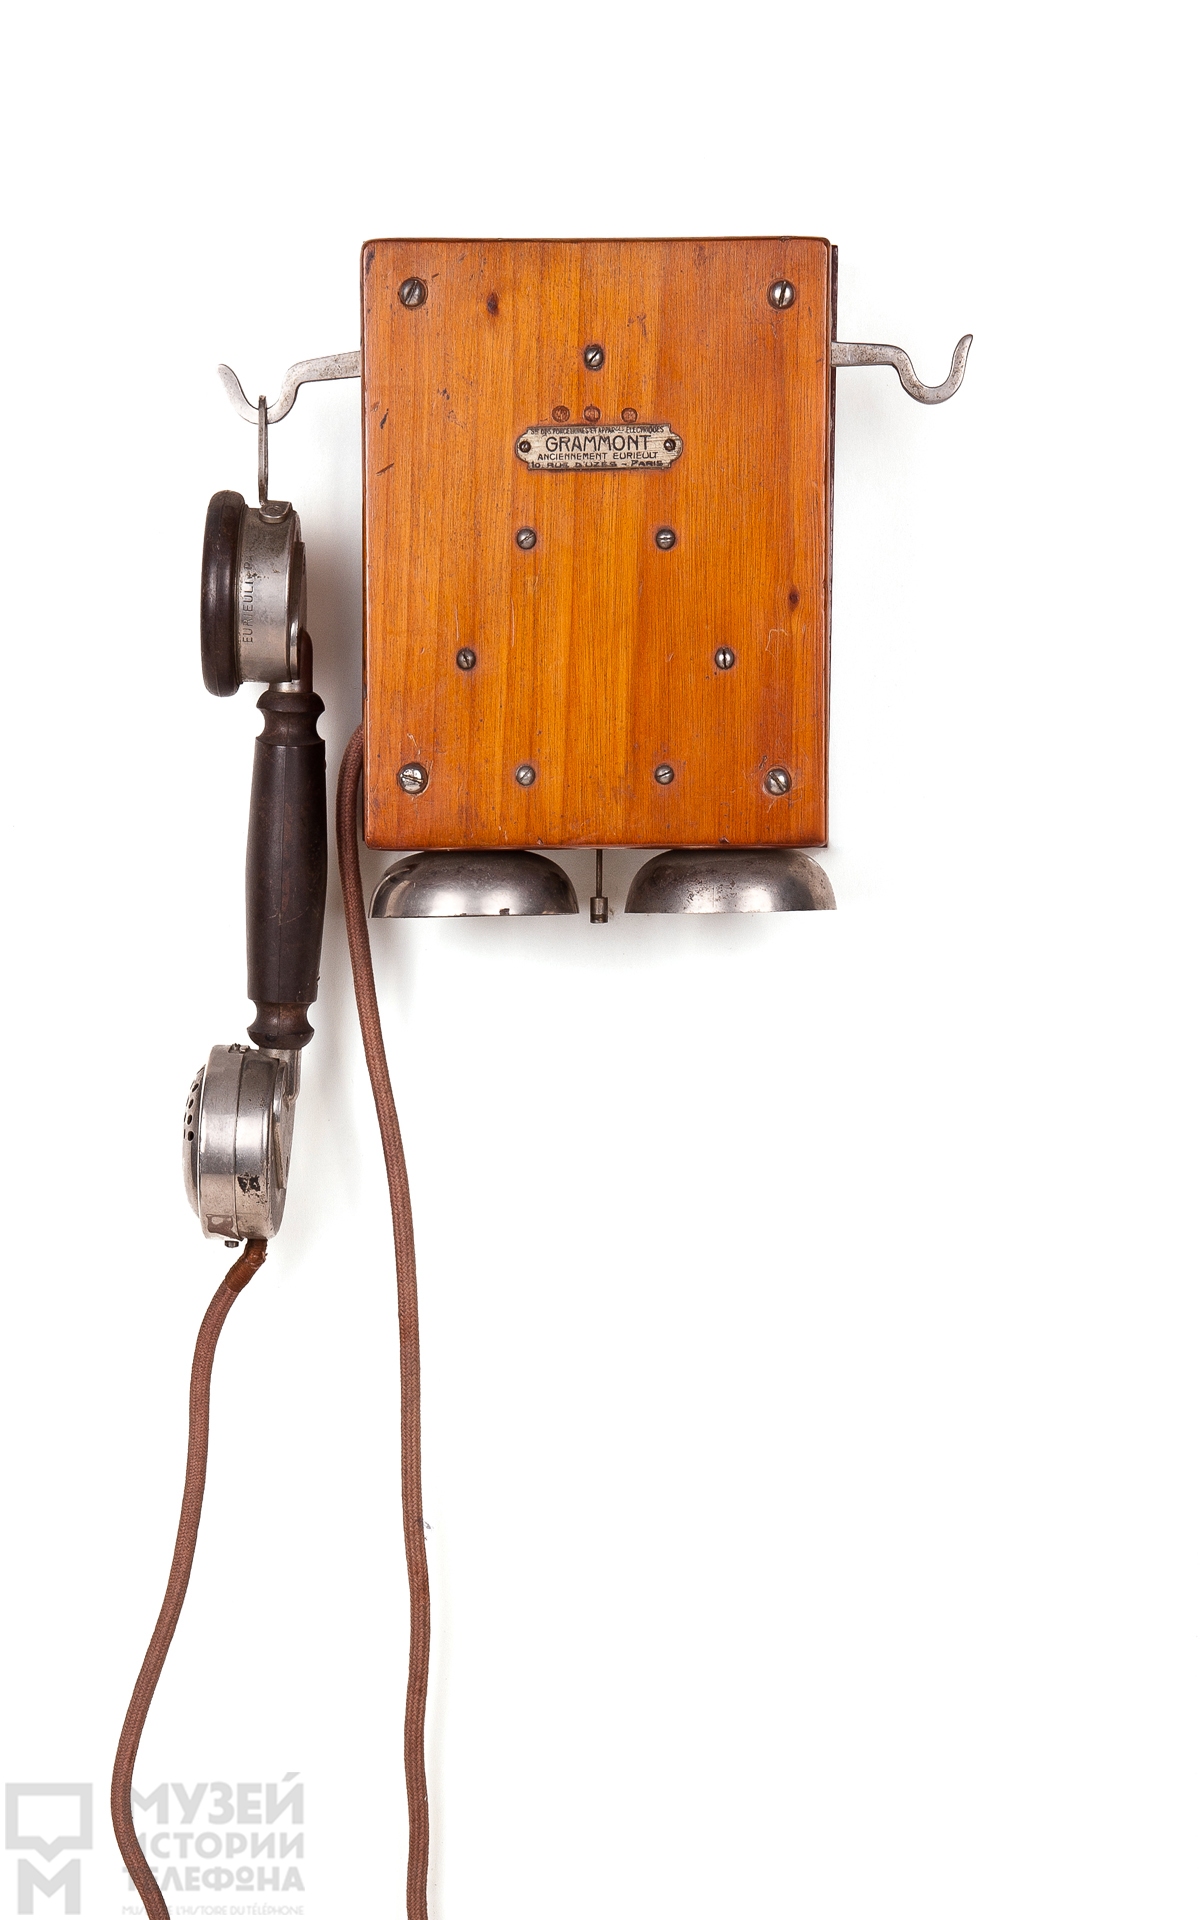 Телефонный аппарат прямого вызова с микротелефонной трубкой системы Eurieult и поляризованным звонком